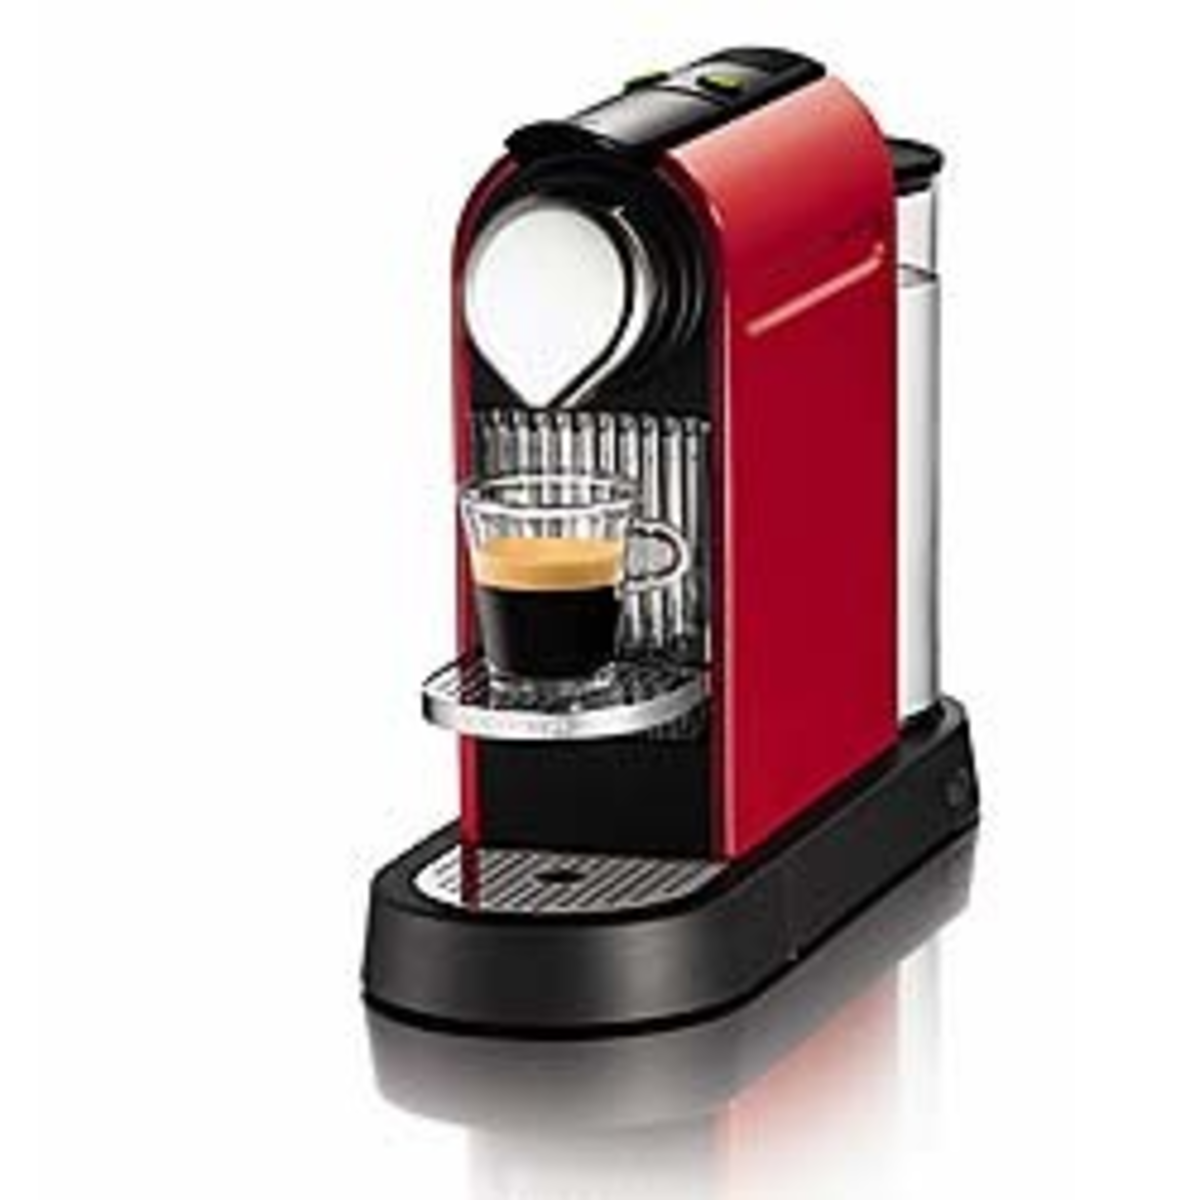 Nespresso kaffemaskine er bedst | Guide at vælge